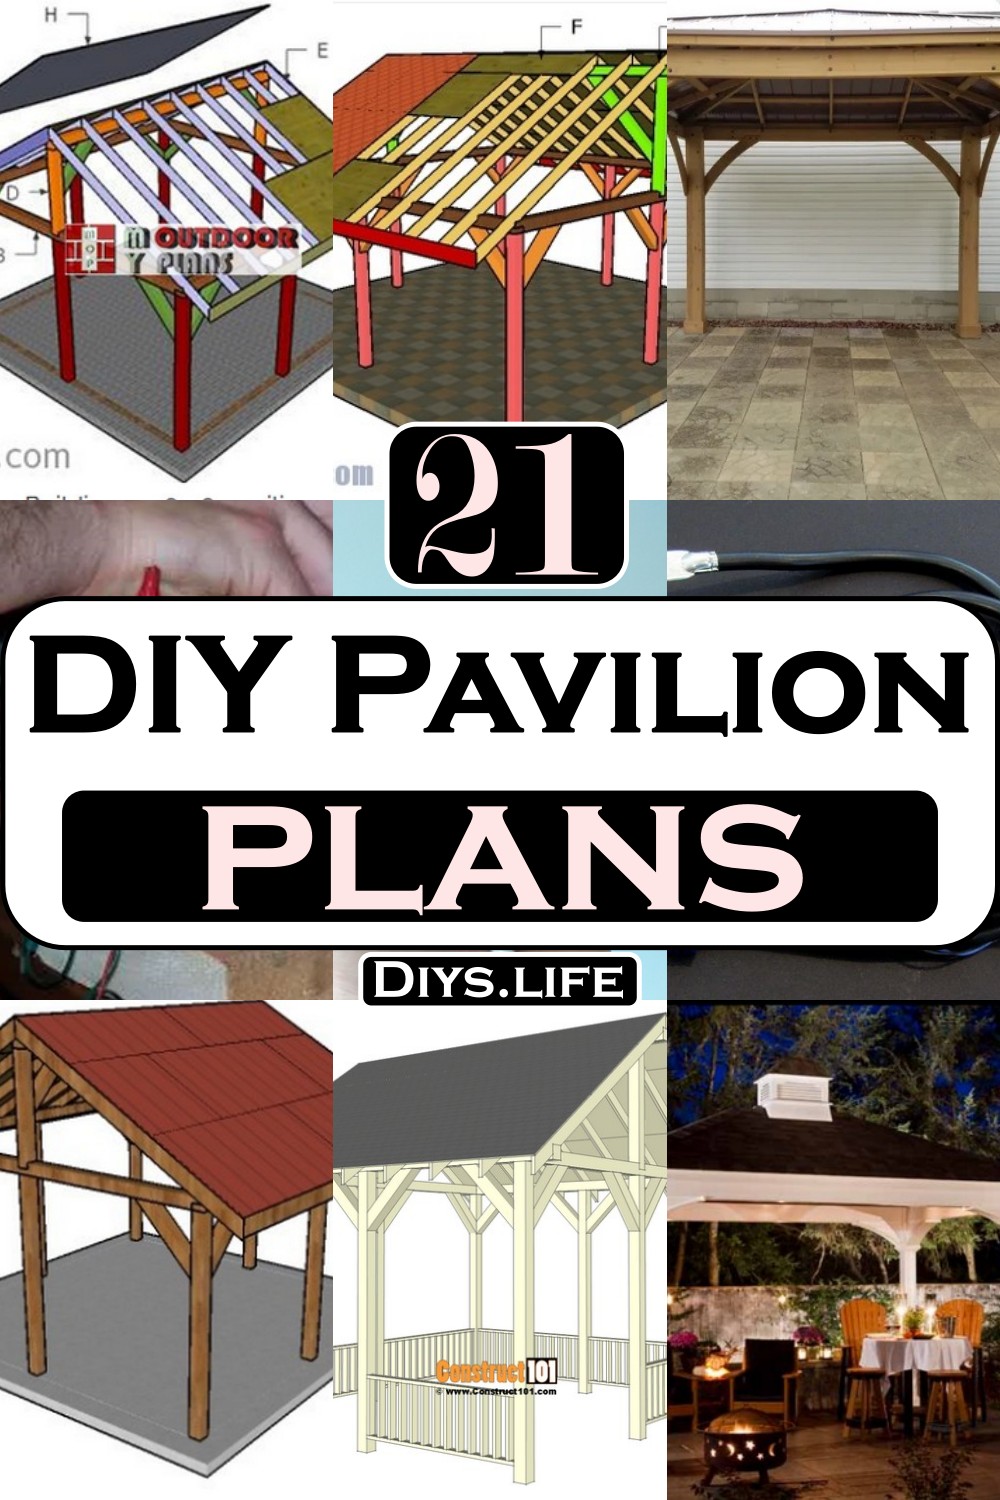 DIY Pavilion Plans